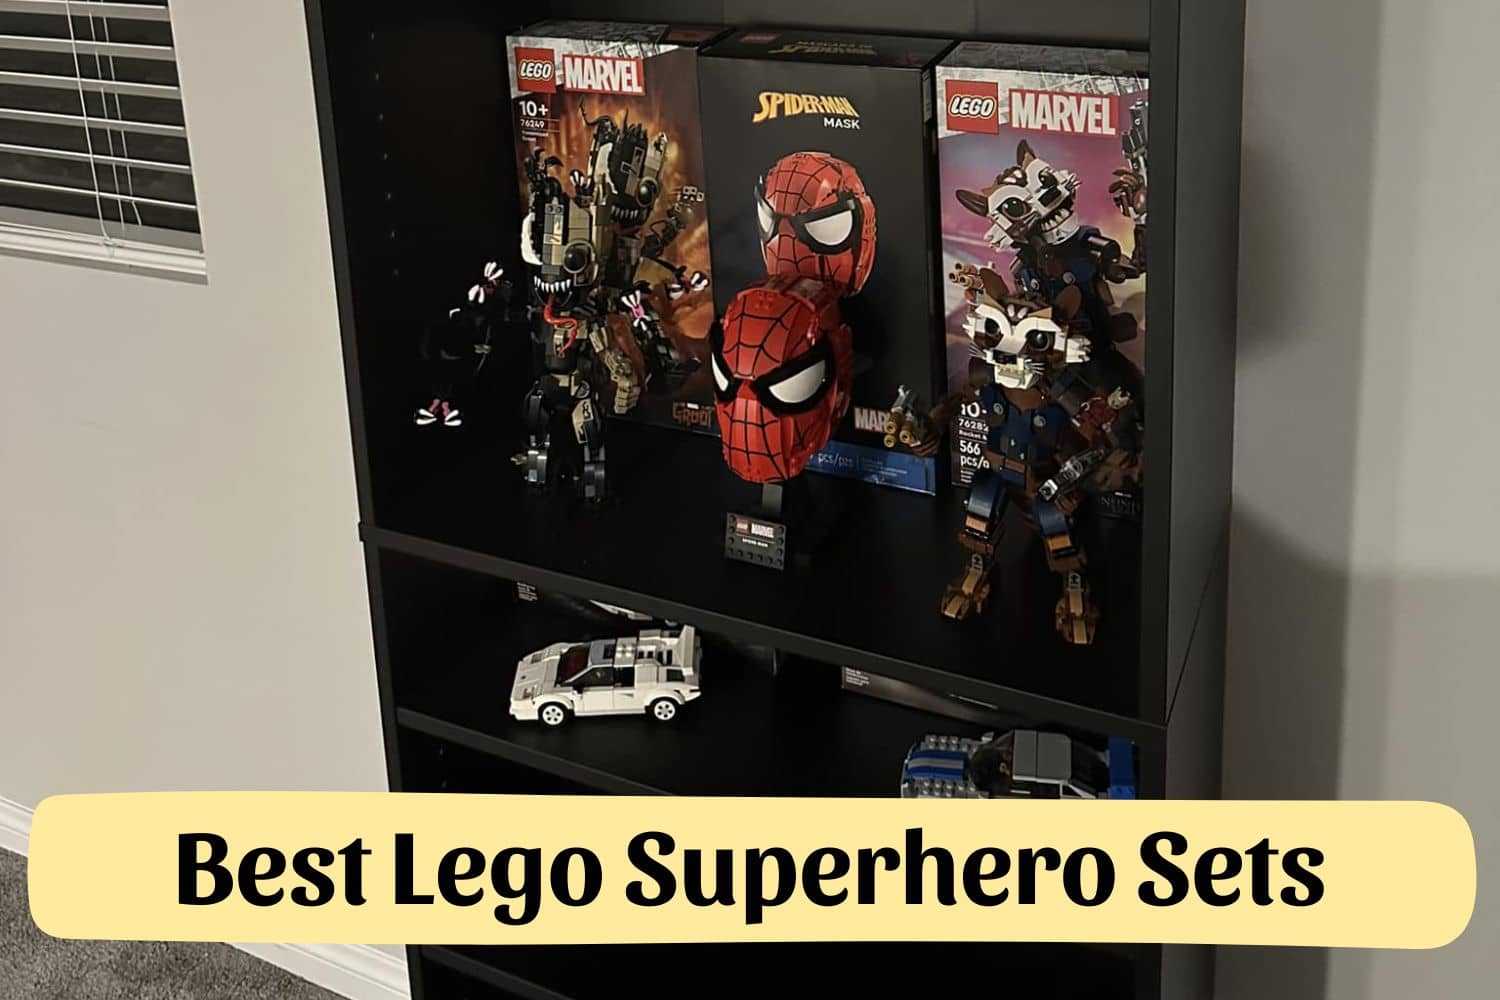 Best Lego Superhero Sets